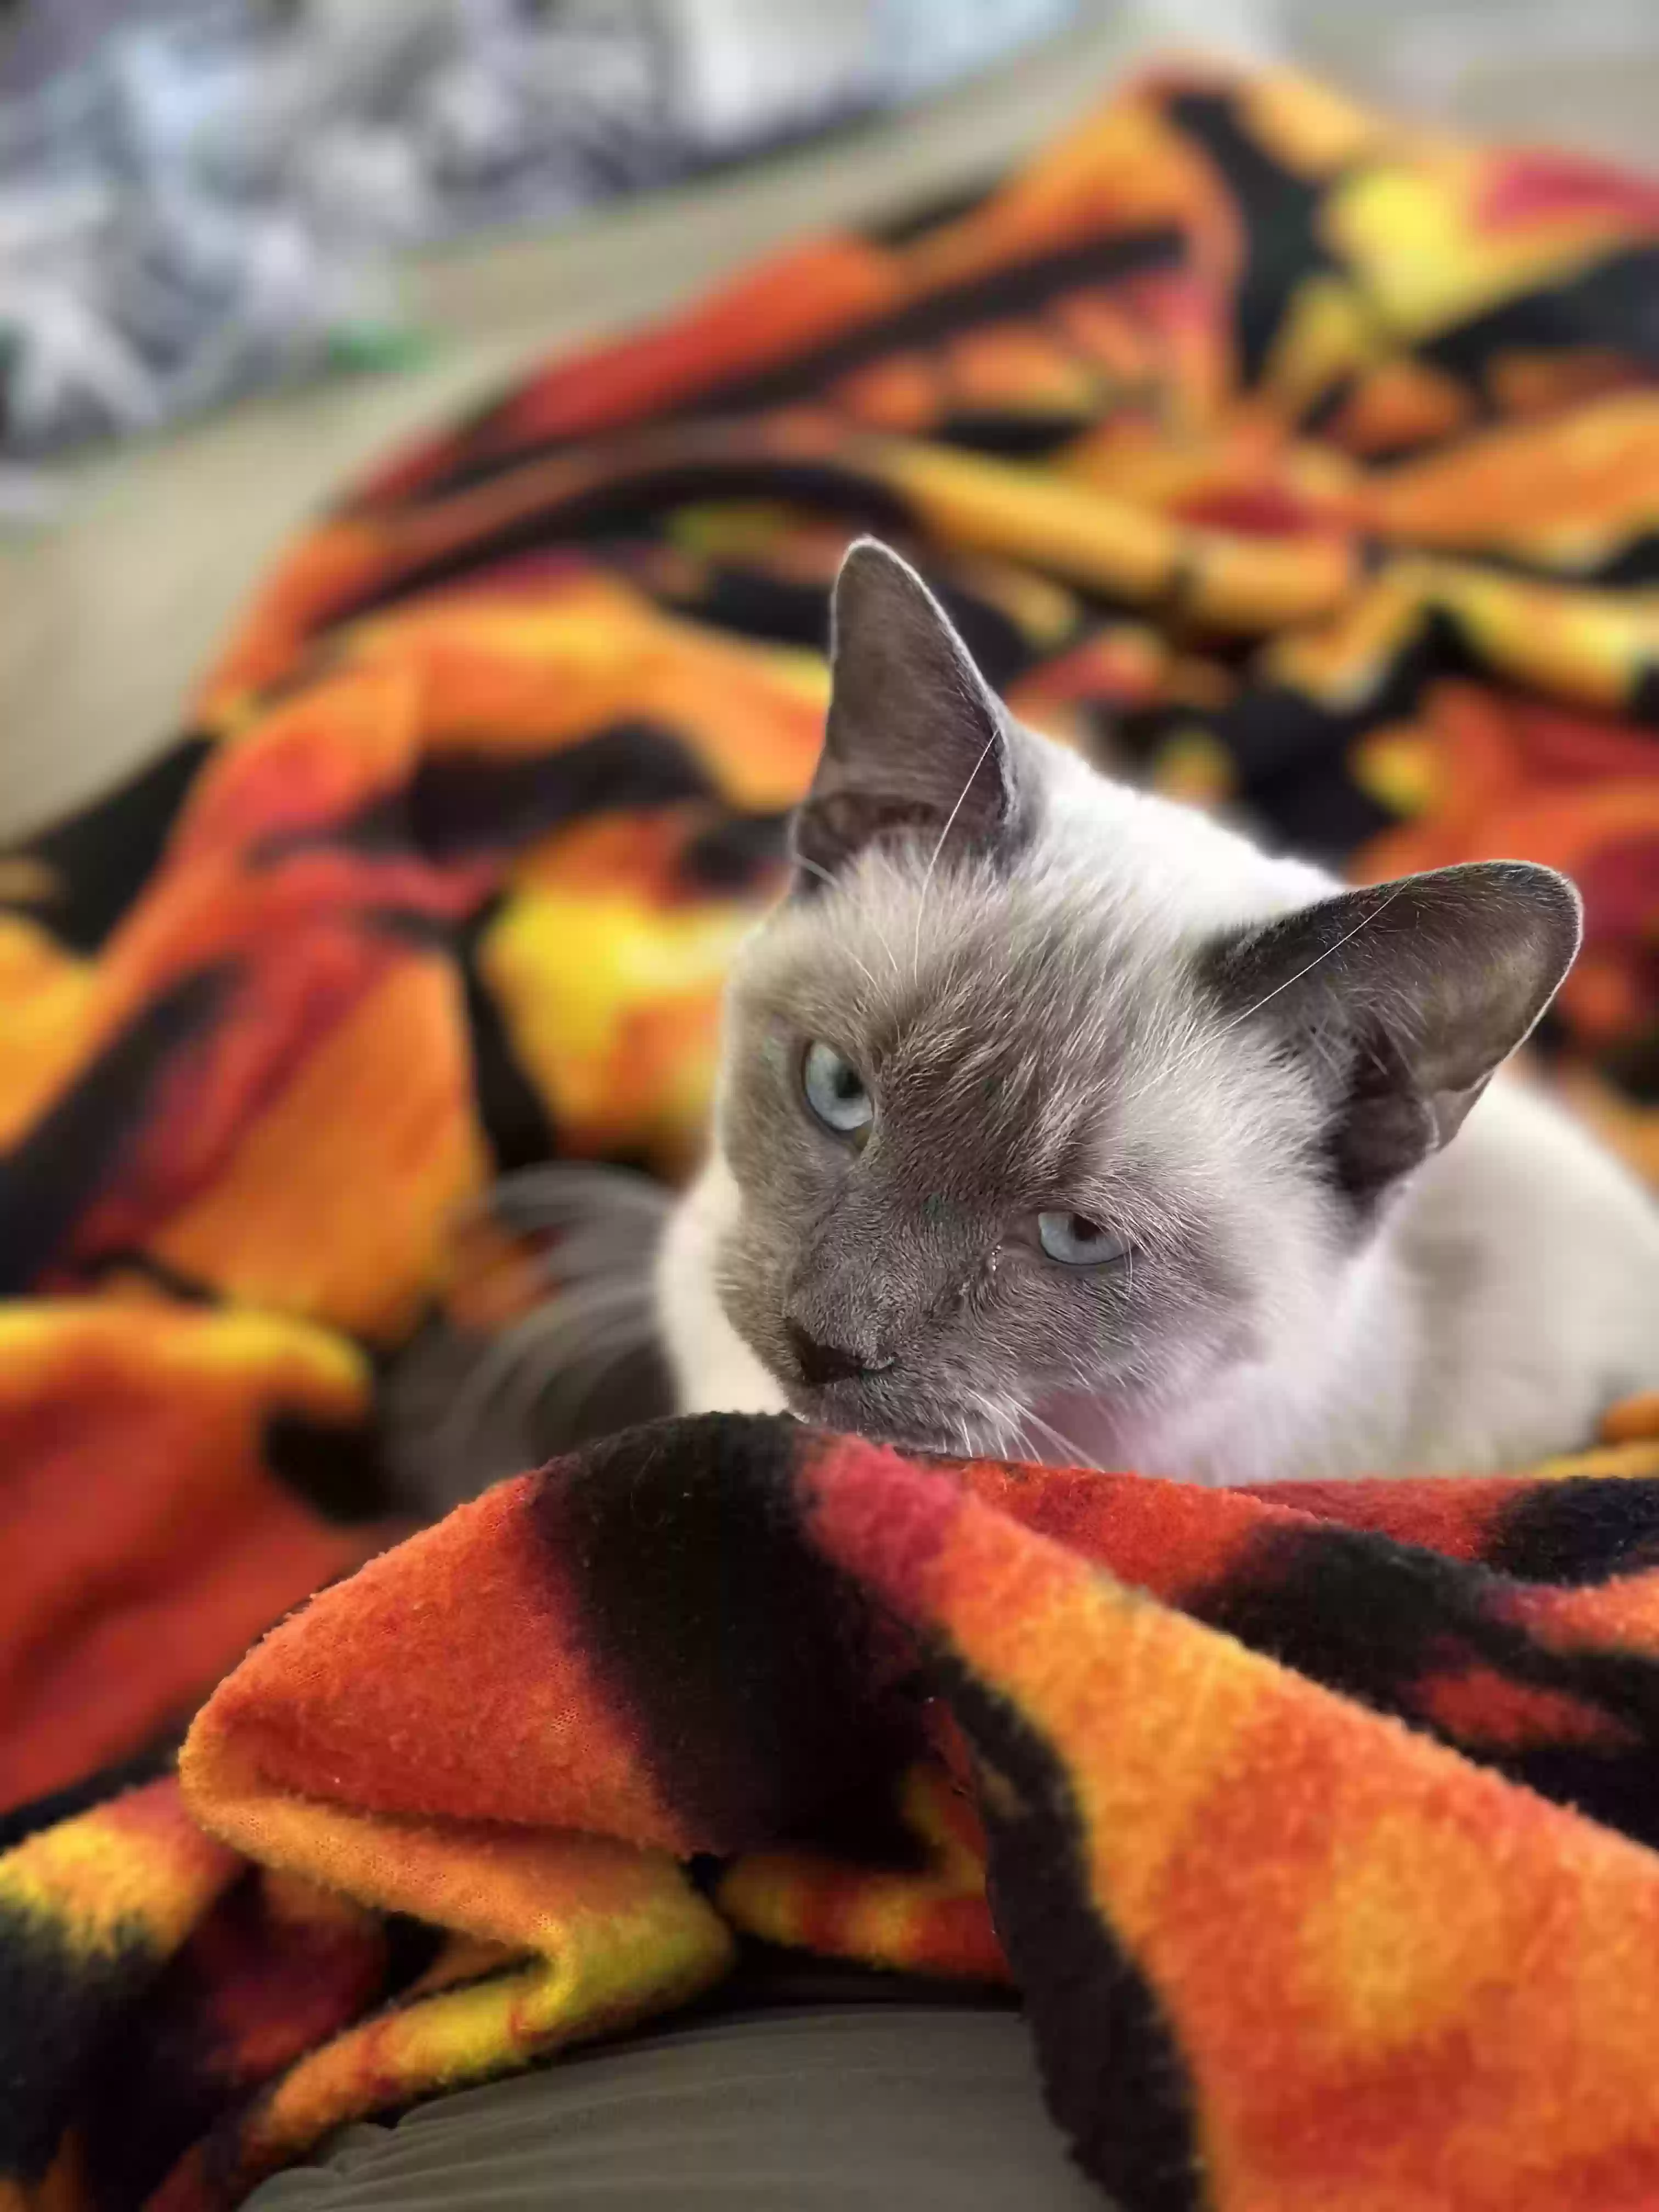 adoptable Cat in Prescott,AZ named Kitty